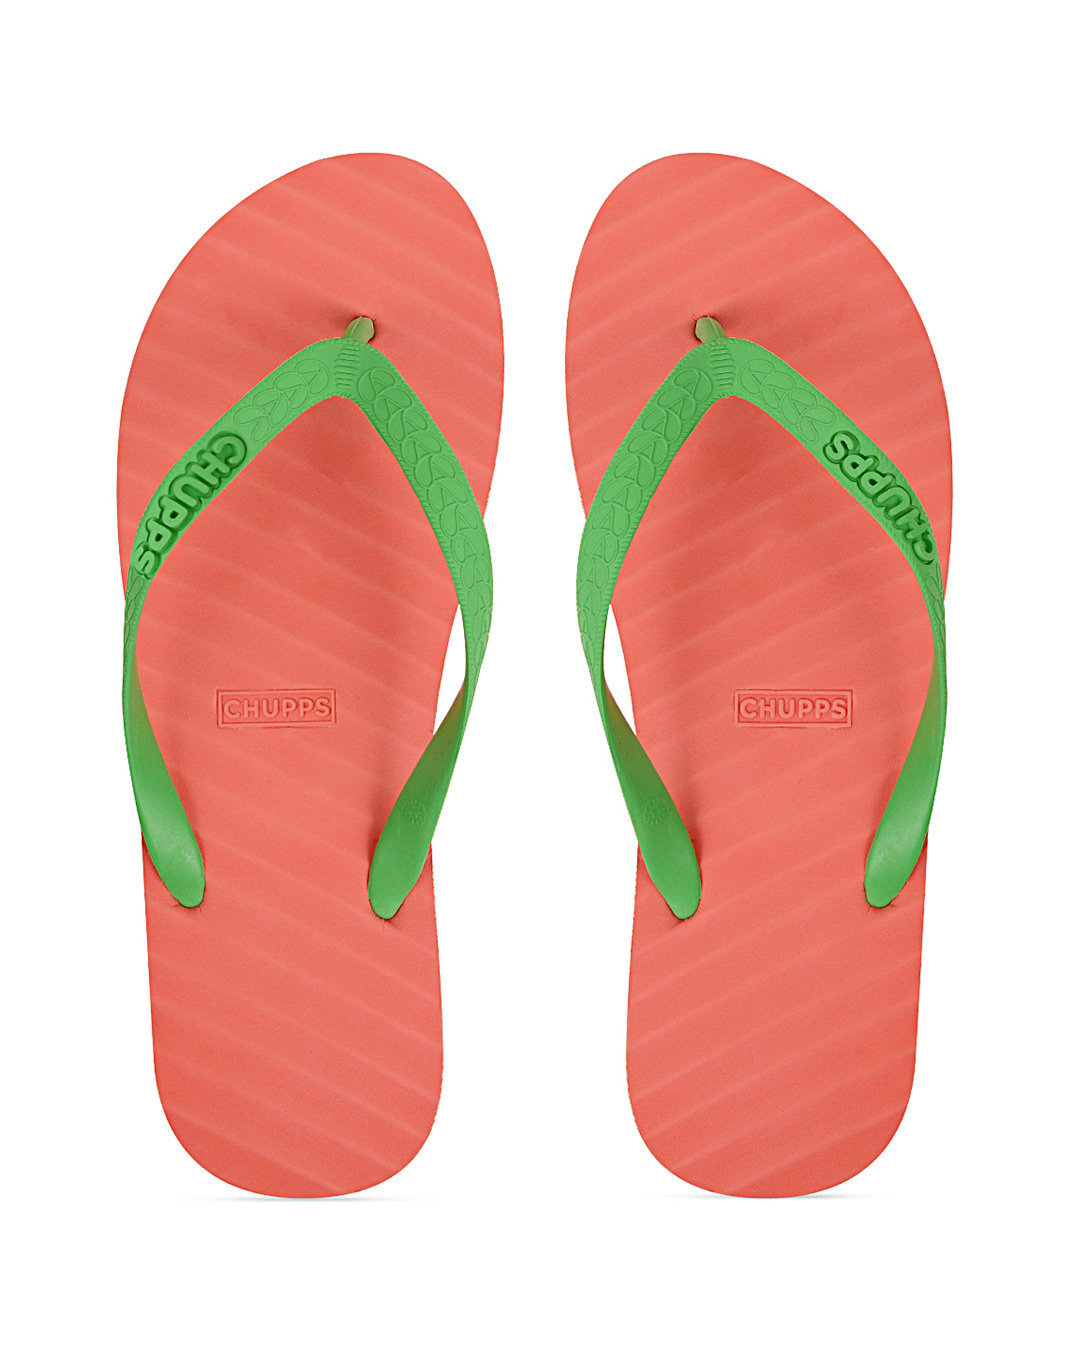 Buy Chupps Men's Banana Leaf Light Red Green Flip Flops Online in India ...